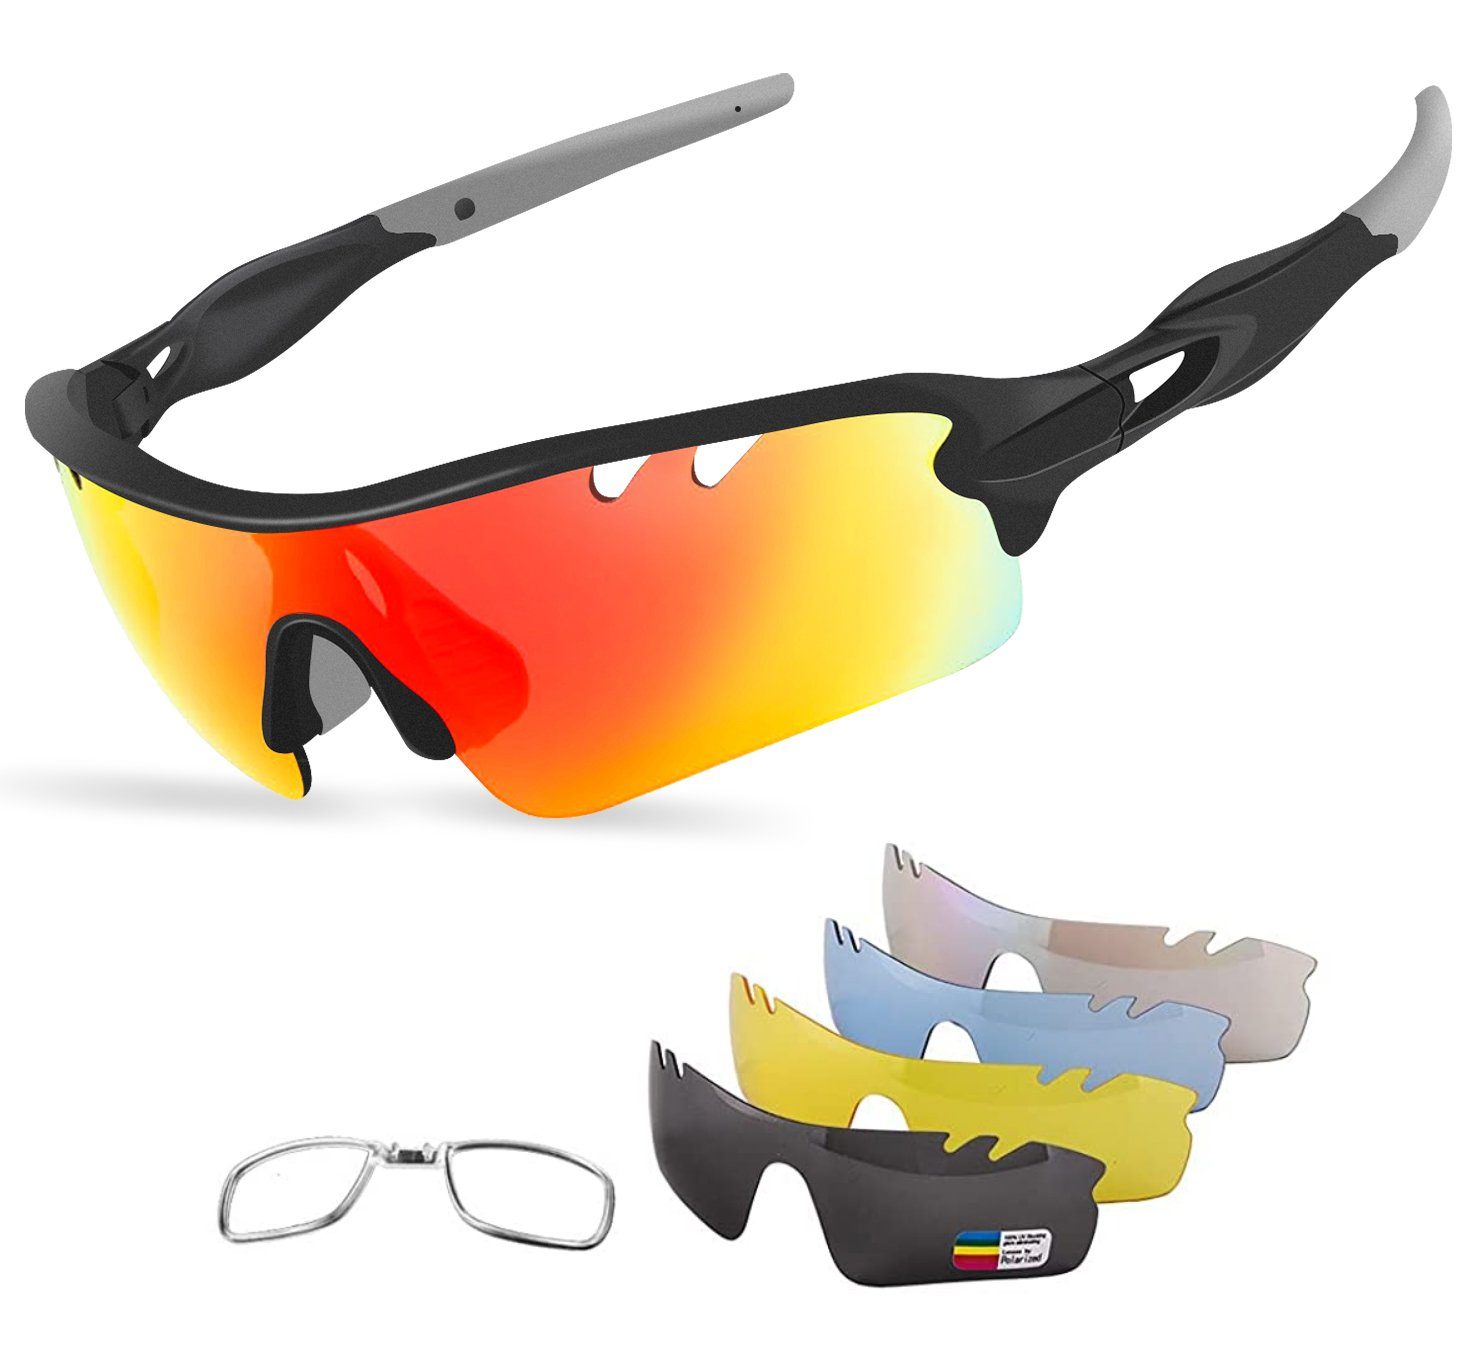 Sonnenbrille Polarisiert Verspiegelt Radbrille Bikerbrille Sportbrille Neu. 